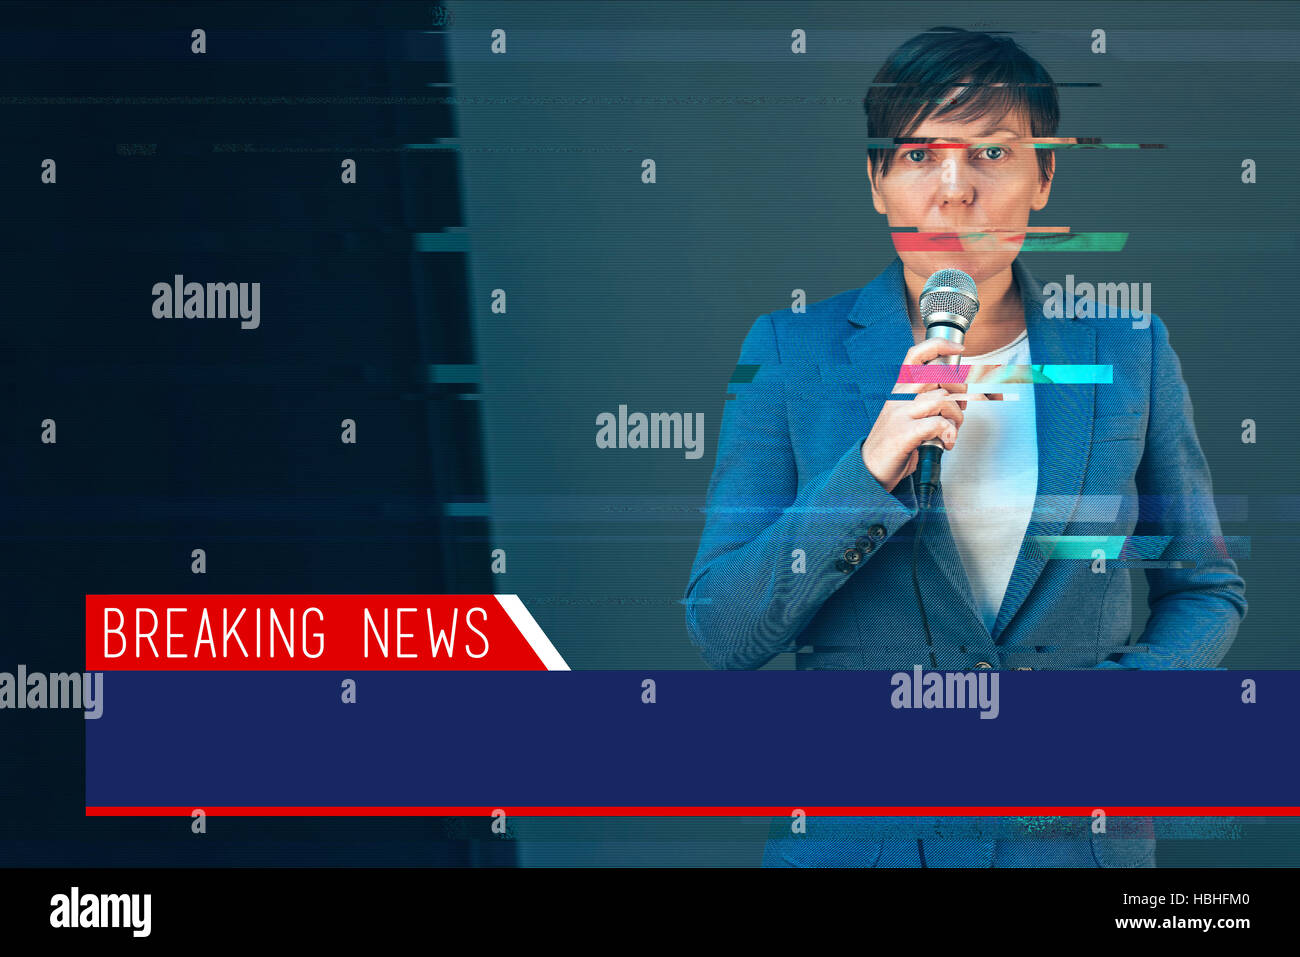 Ultime notizie digitali con effetto di glitch - femmina elegante giornalista televisivo doing business reportage, tenendo il microfono in mano Foto Stock